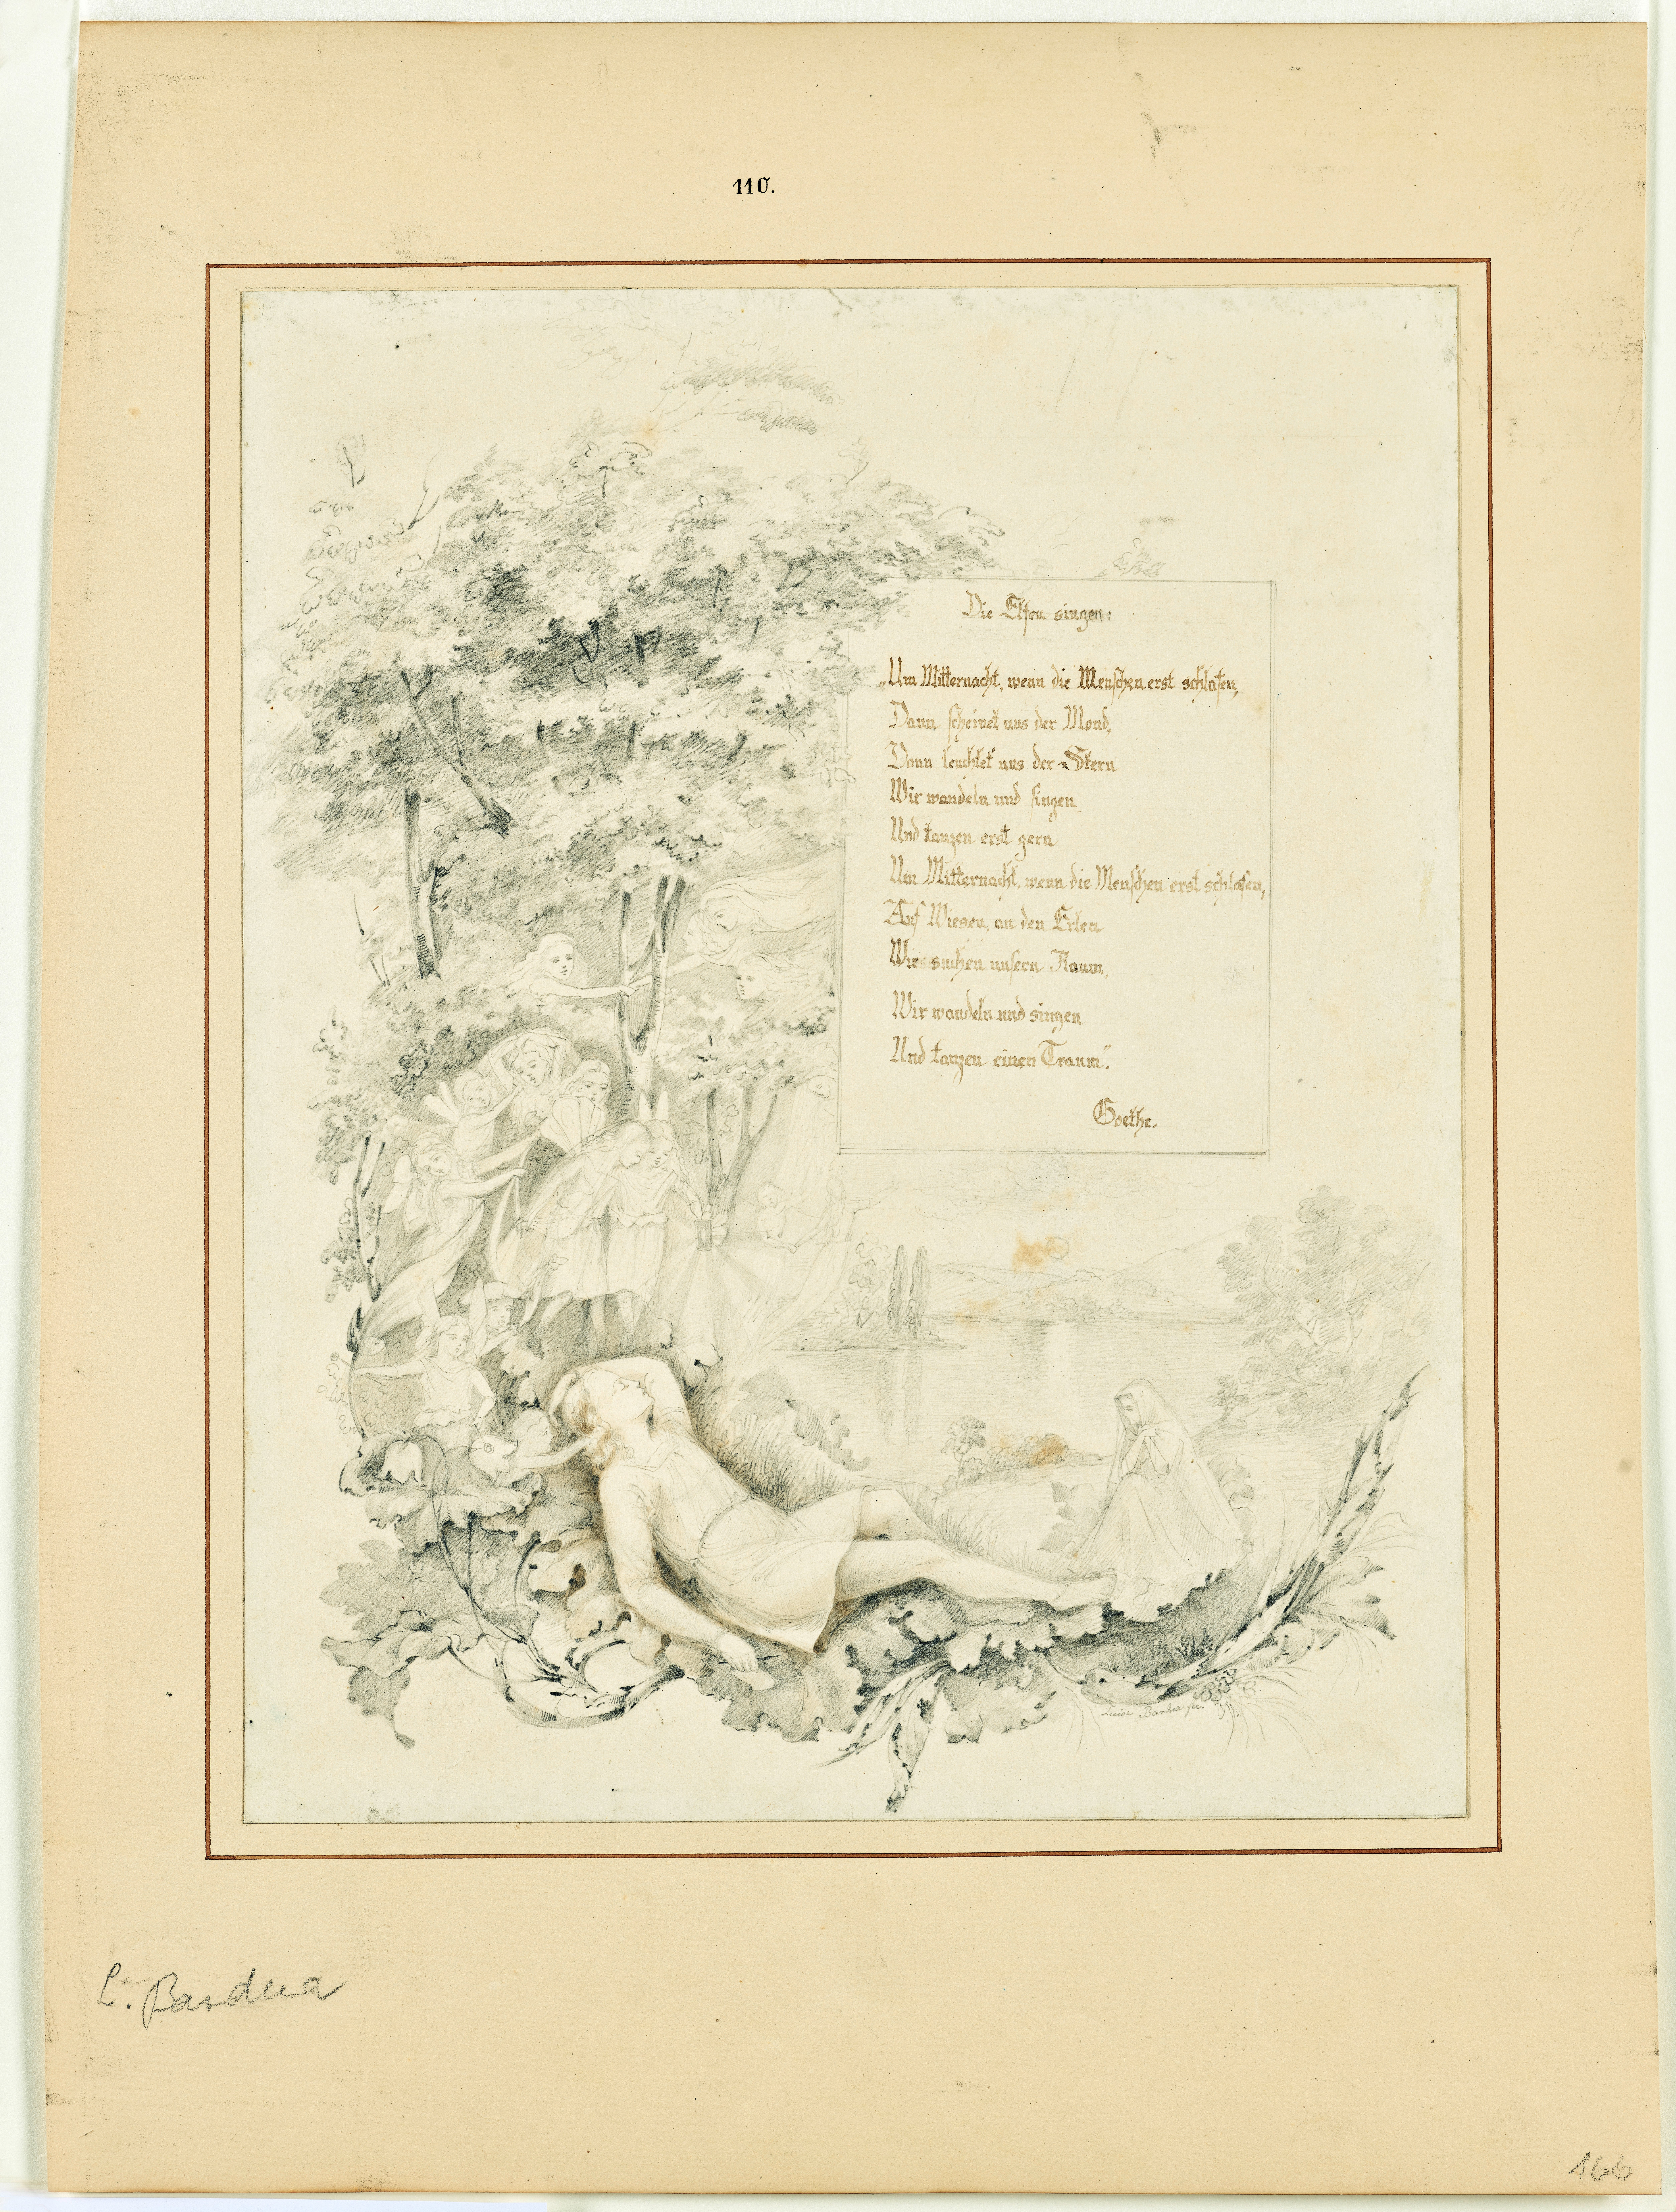 Bardua, Luise: Kalligraphie und Randzeichnung zu dem Gedicht: Gesang der Elfen (1780), SPSG GK II (5) 166. (Stiftung Preußische Schlösser und Gärten Berlin-Brandenburg CC BY-NC-SA)